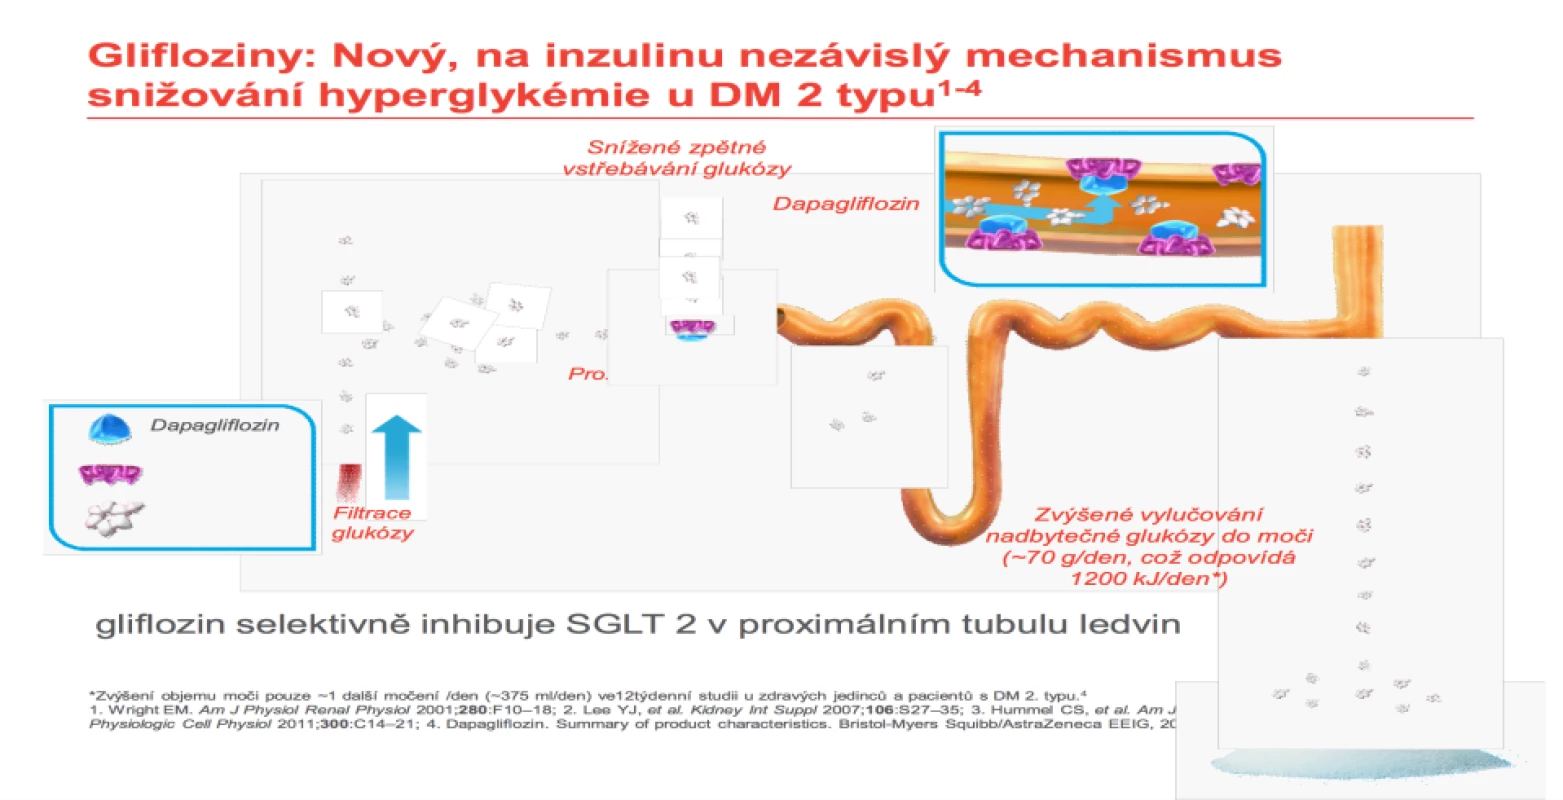 Vysvětlení ztráty glukózy močí. Zdroj: AstraZeneca.<br>
Fig. 8. Explanation of urine glucose loss. Source: AstraZeneca.
